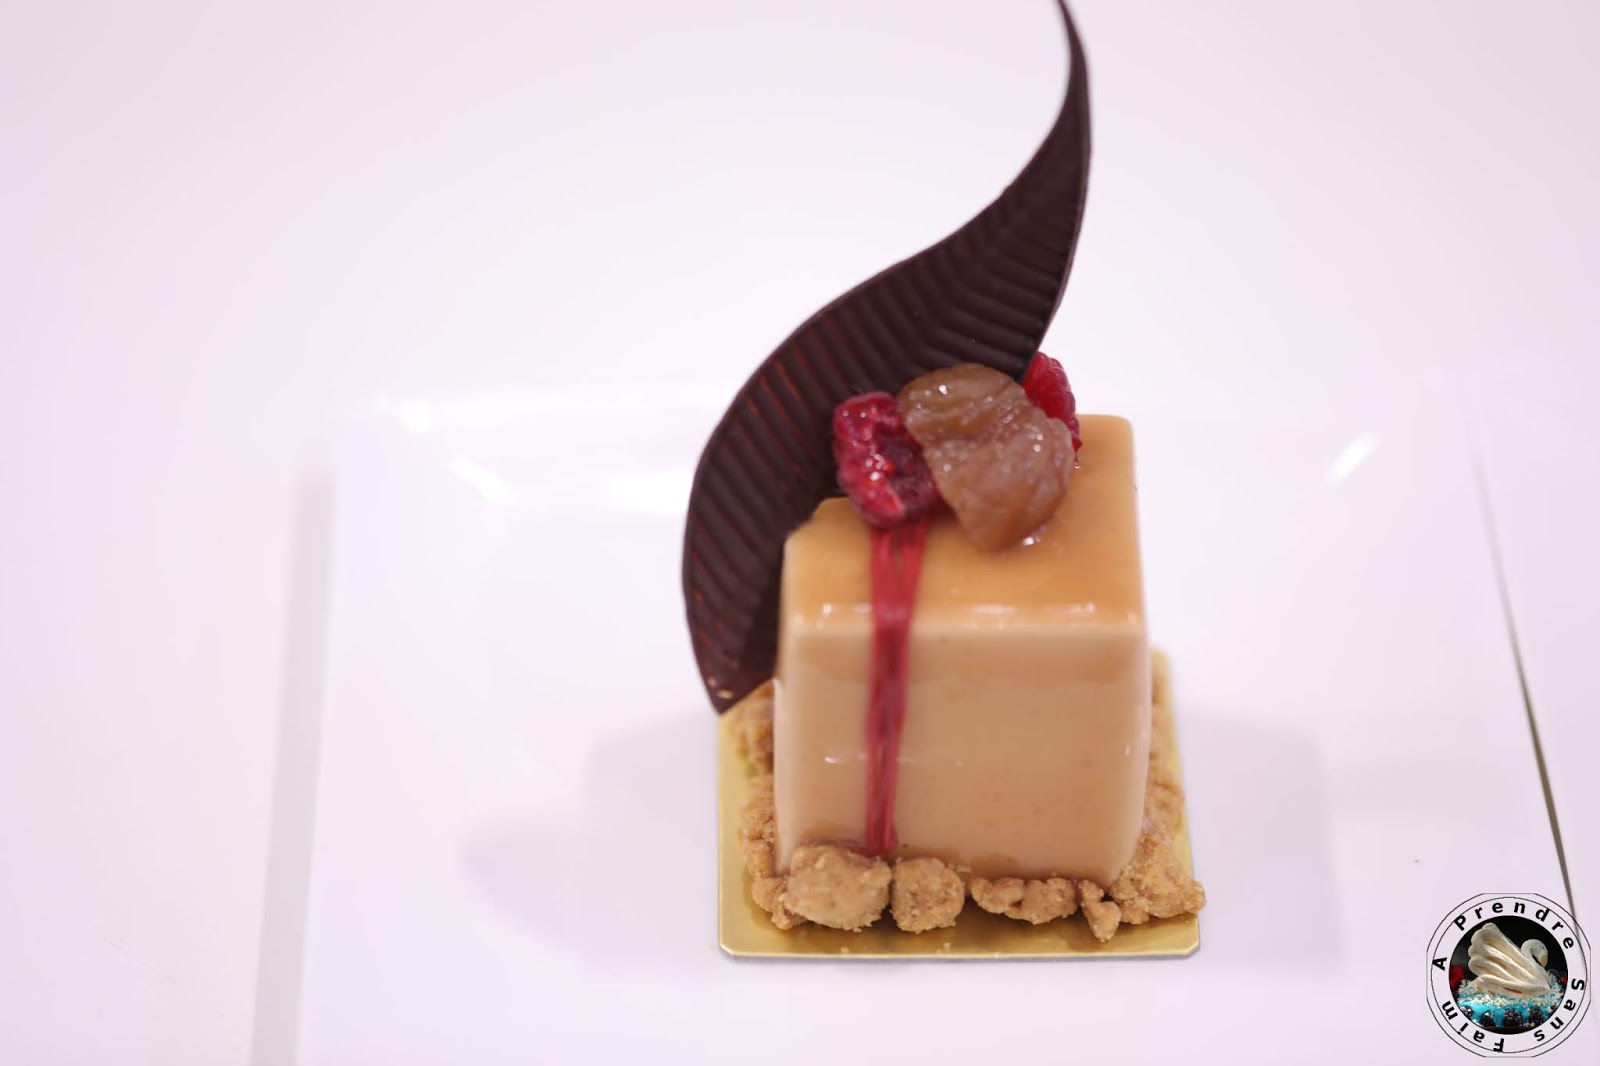 Concours Relais Desserts Charles Proust au Salon du Chocolat 2018